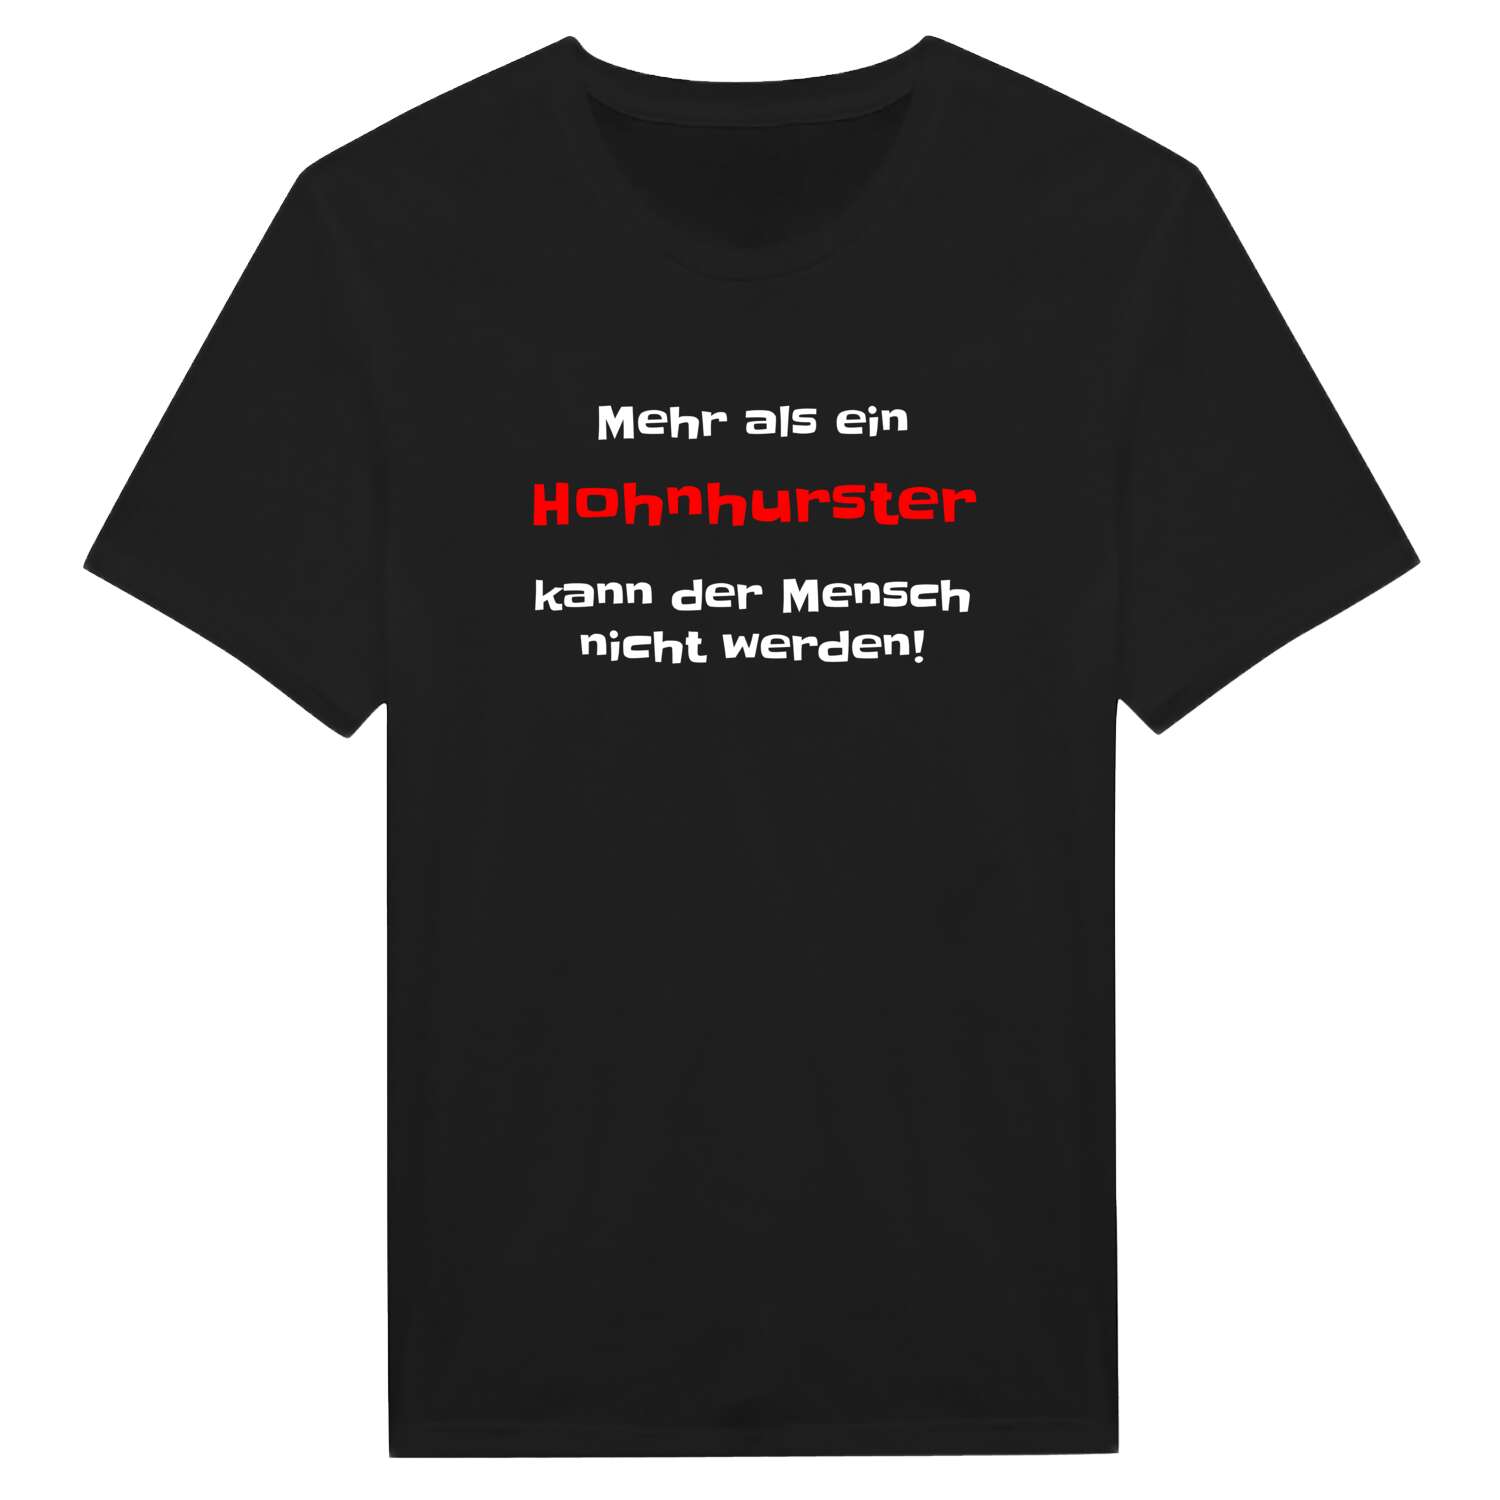 Hohnhurst T-Shirt »Mehr als ein«